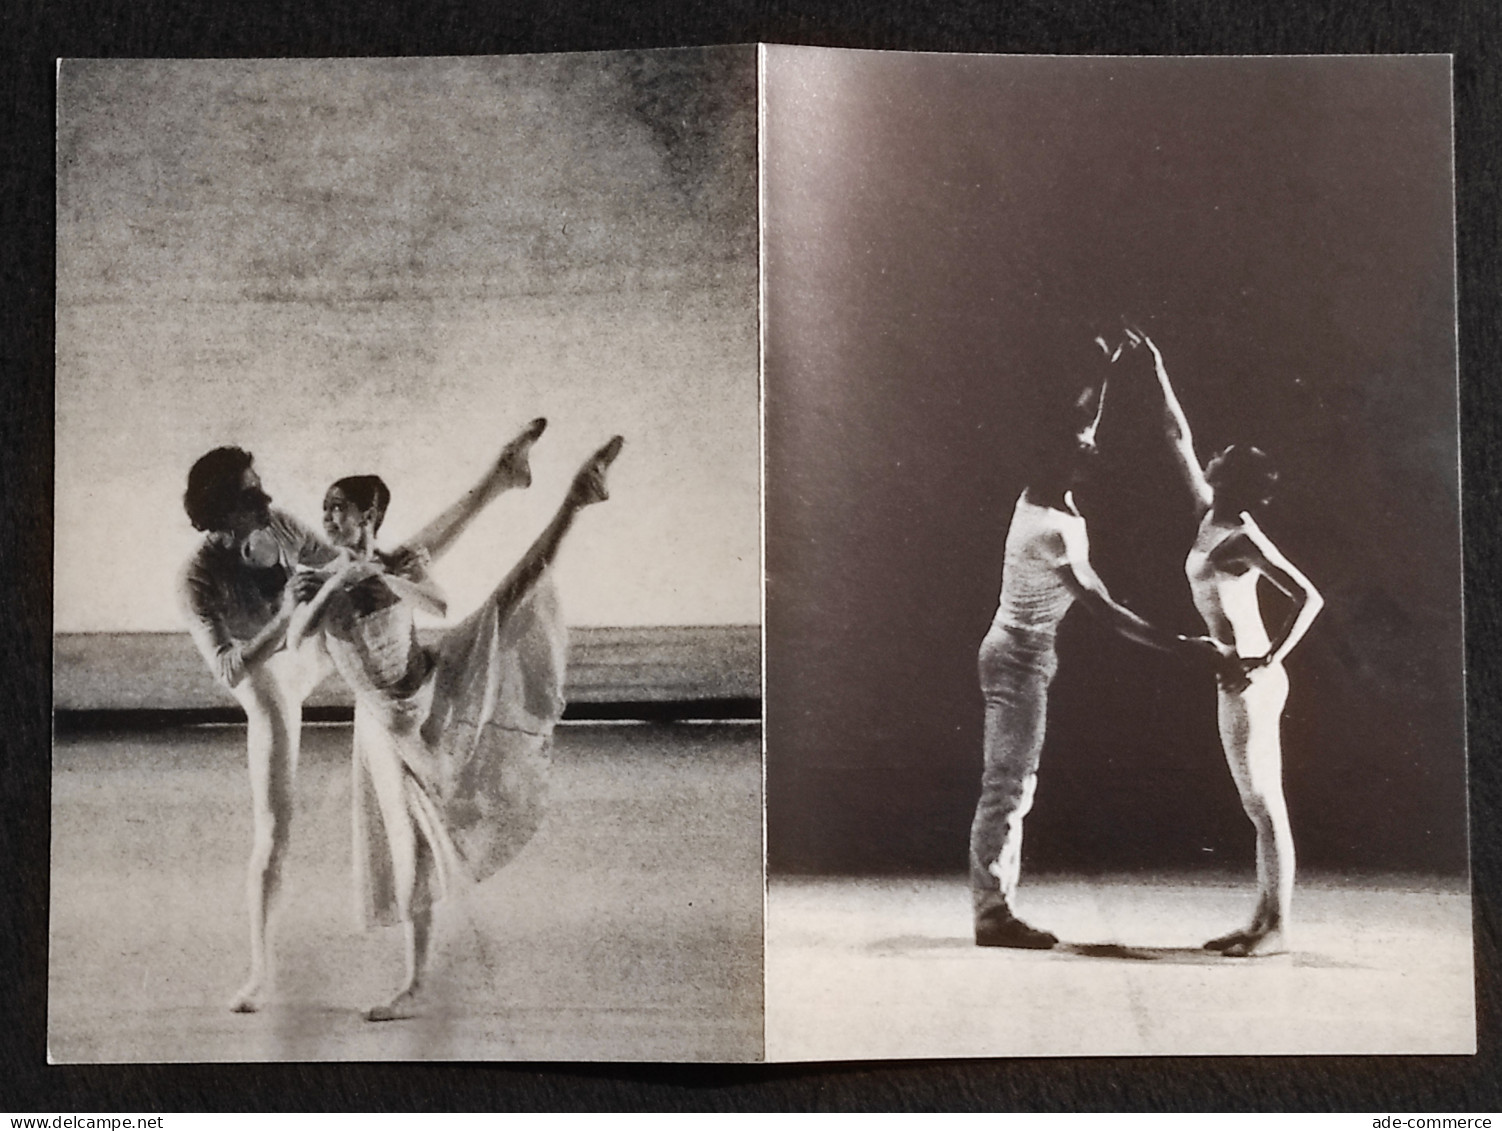 Teatro alla Scala- Concerto Balletto Stagione 1979